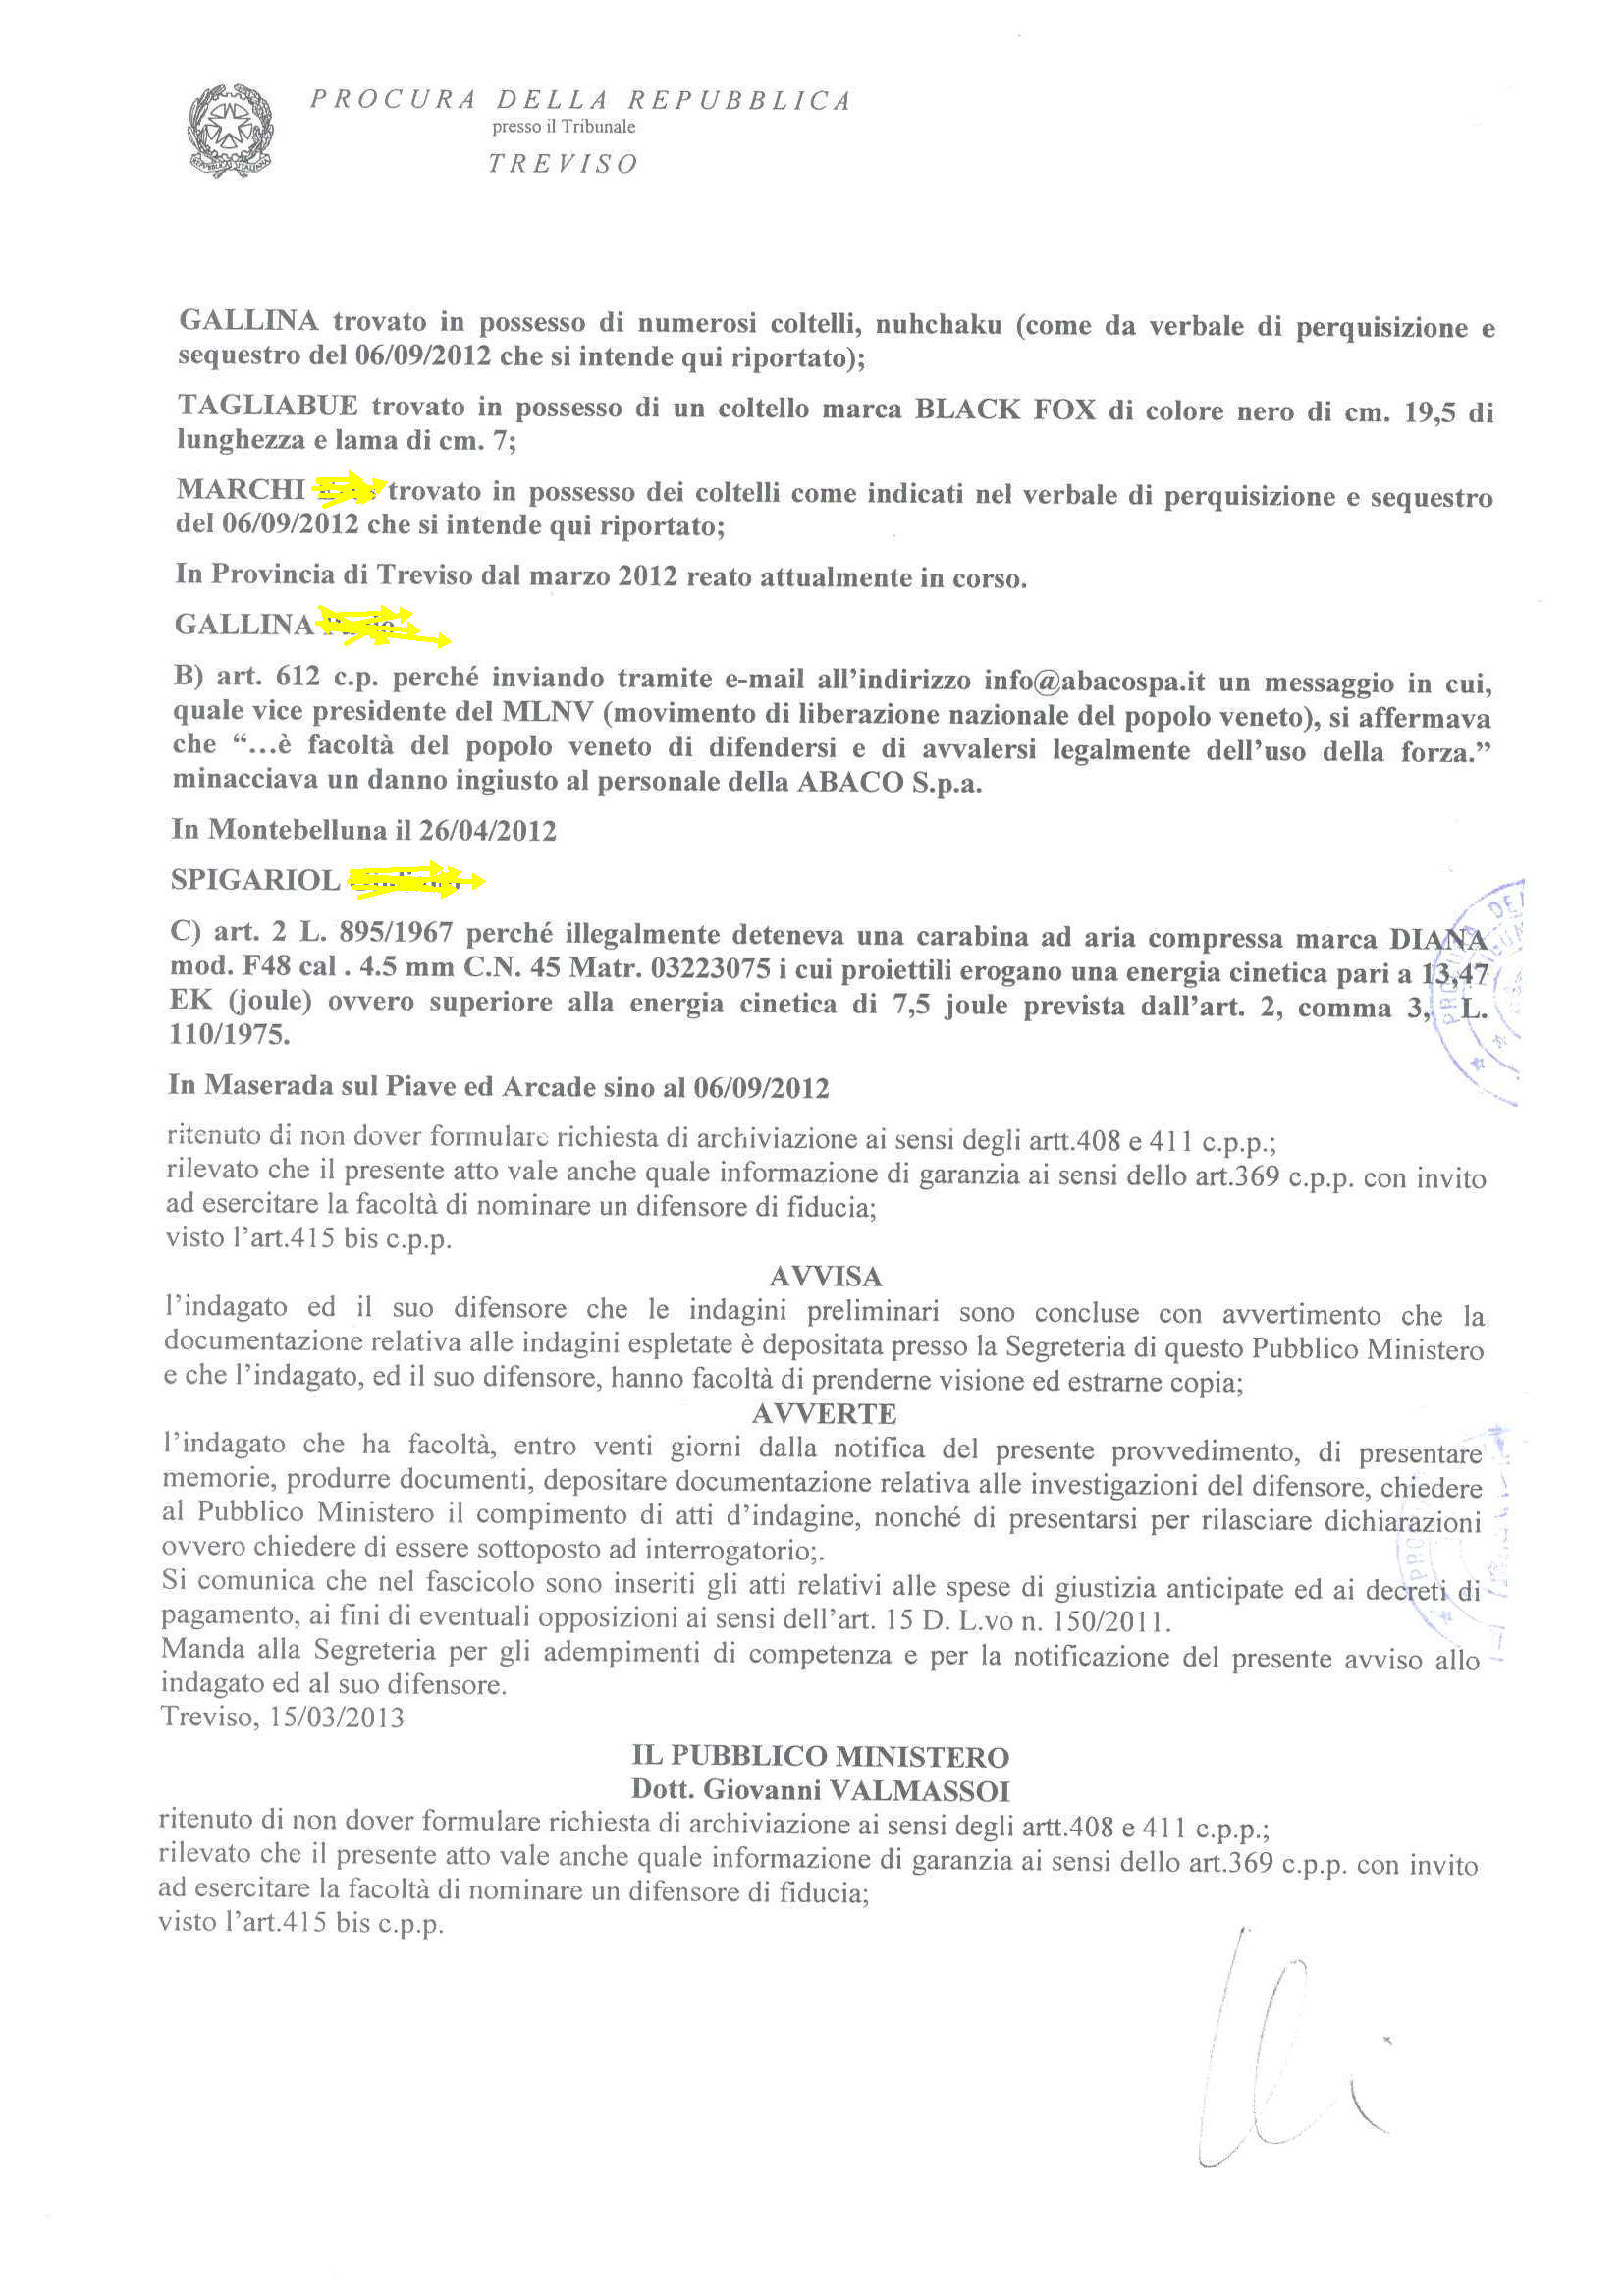 2013.03.29 - PROCURA DELLA REPUBBLICA STRANIERA ITALIANA A TREVISO - AVVISO CONCLUSIONE INDAGINI PAG.2